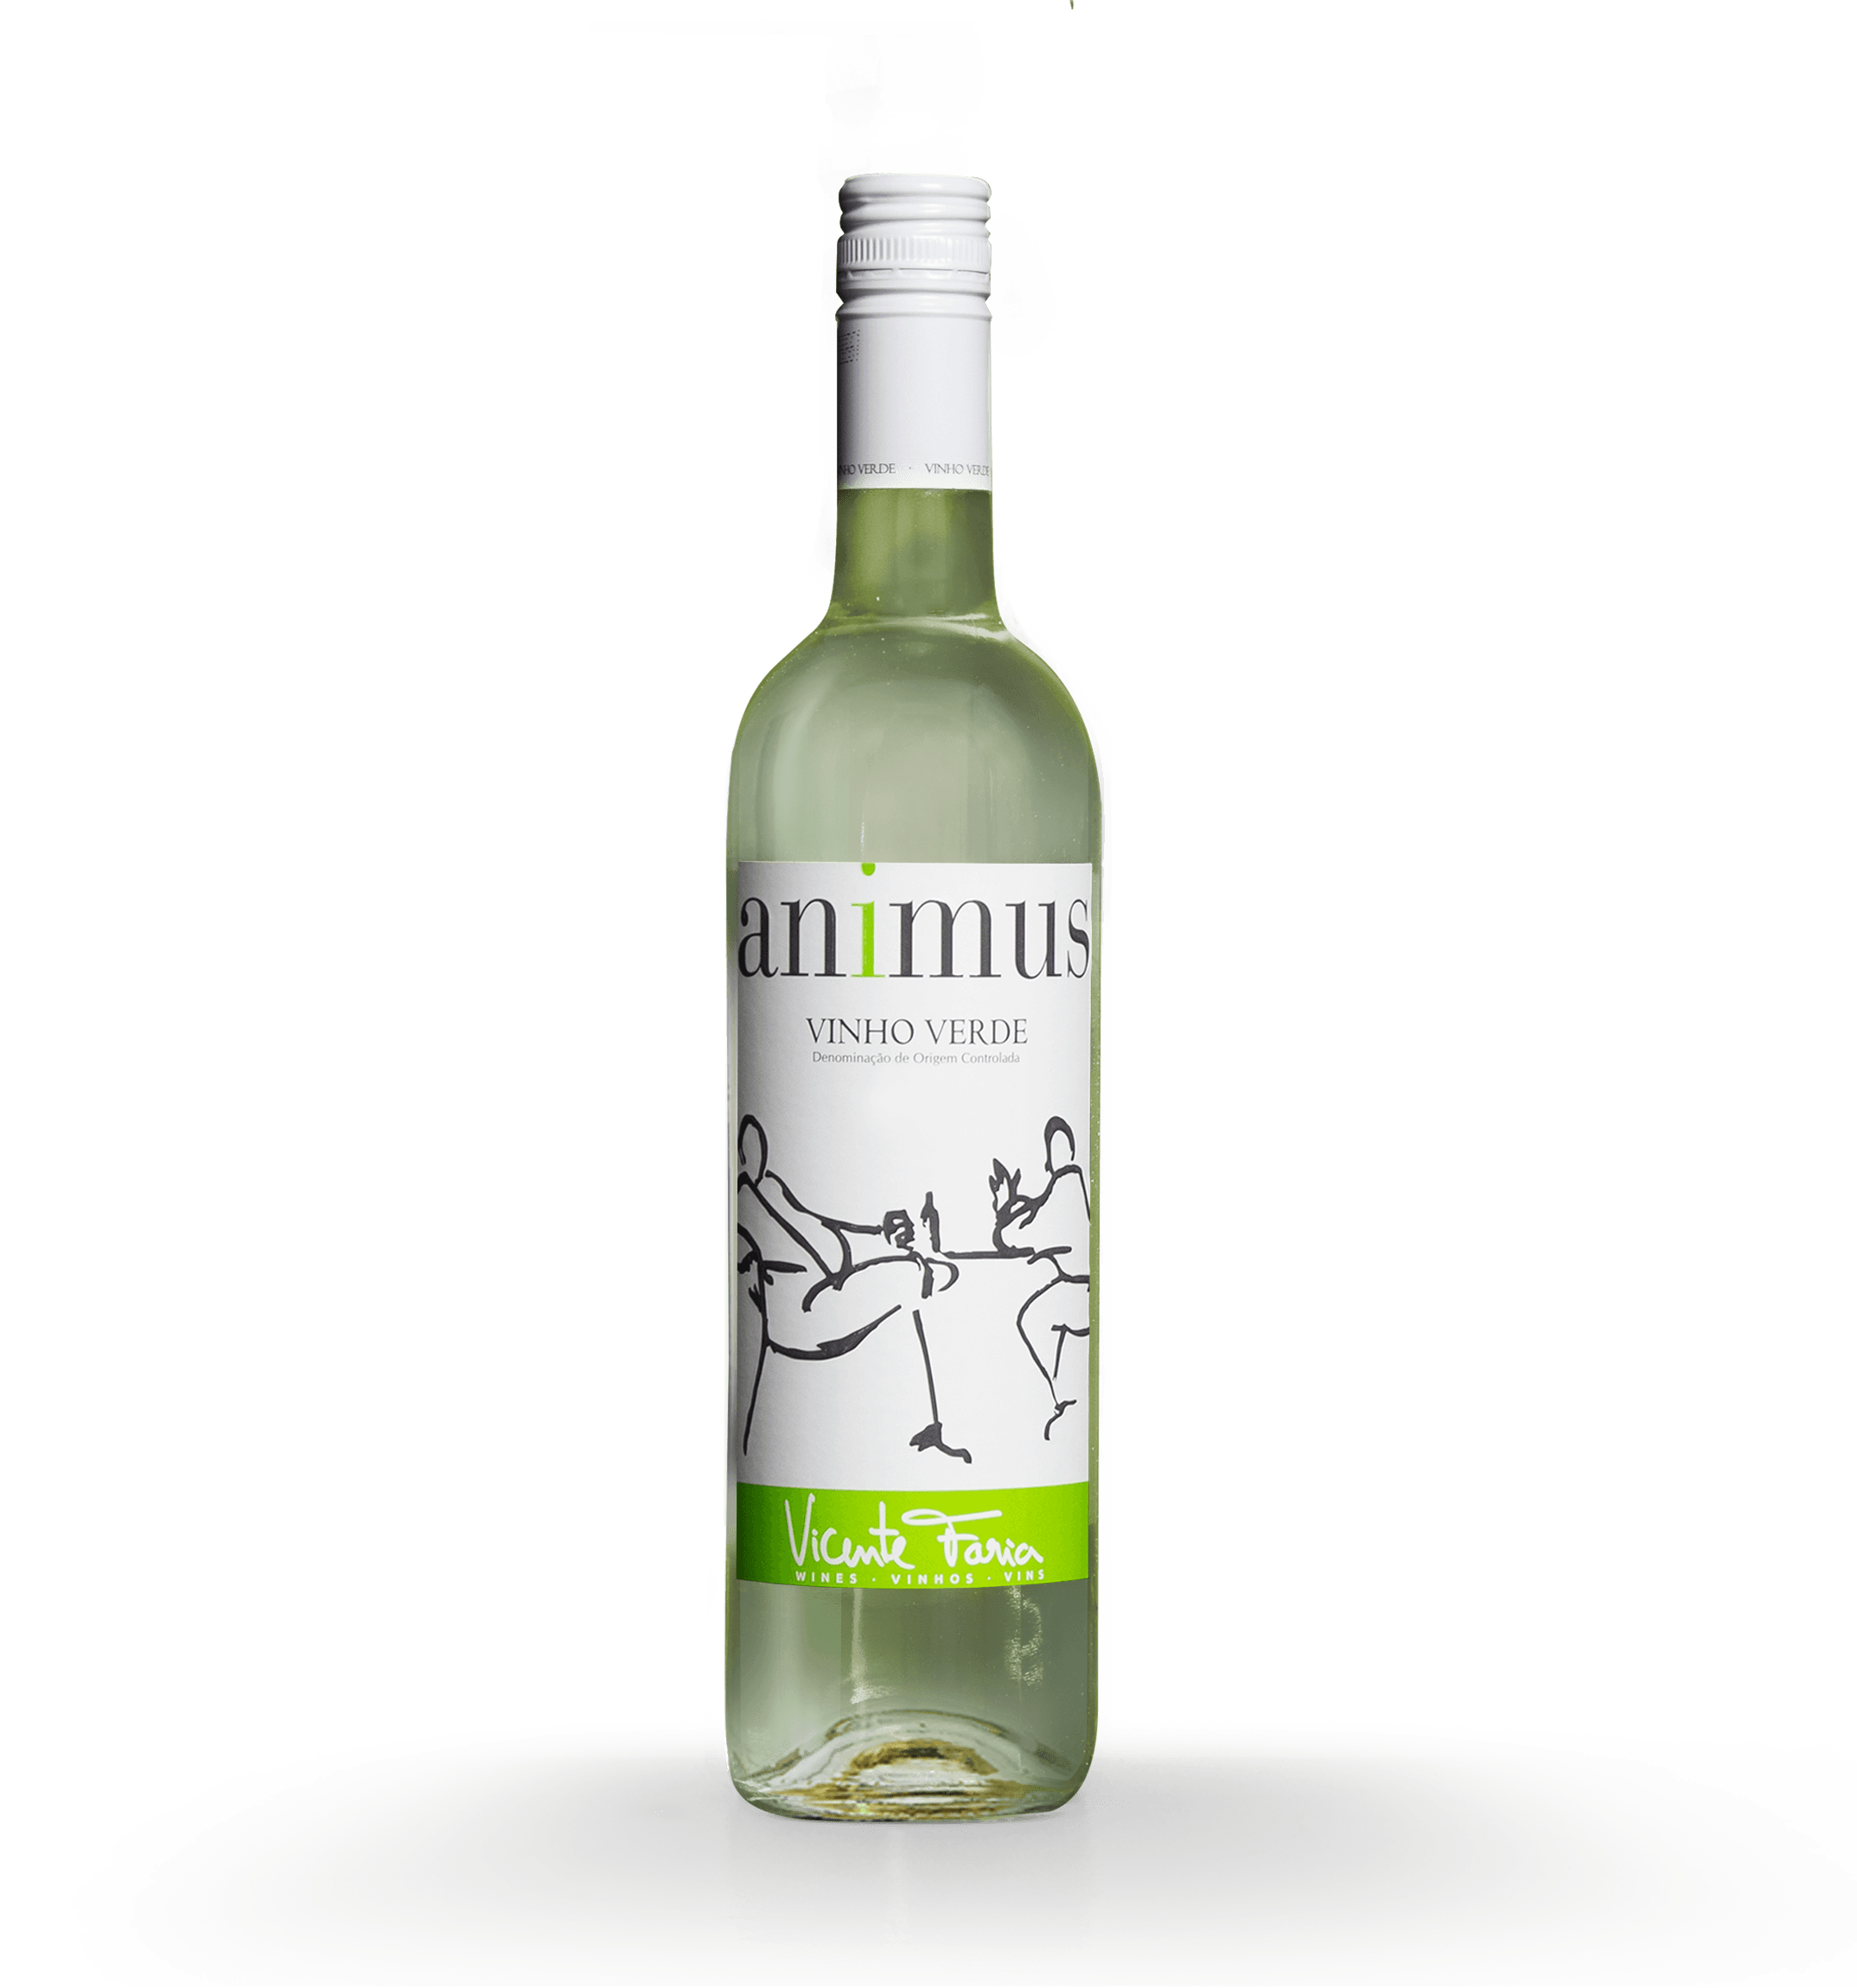 Bottle of the Portuguese wine Animus Vinho Verde